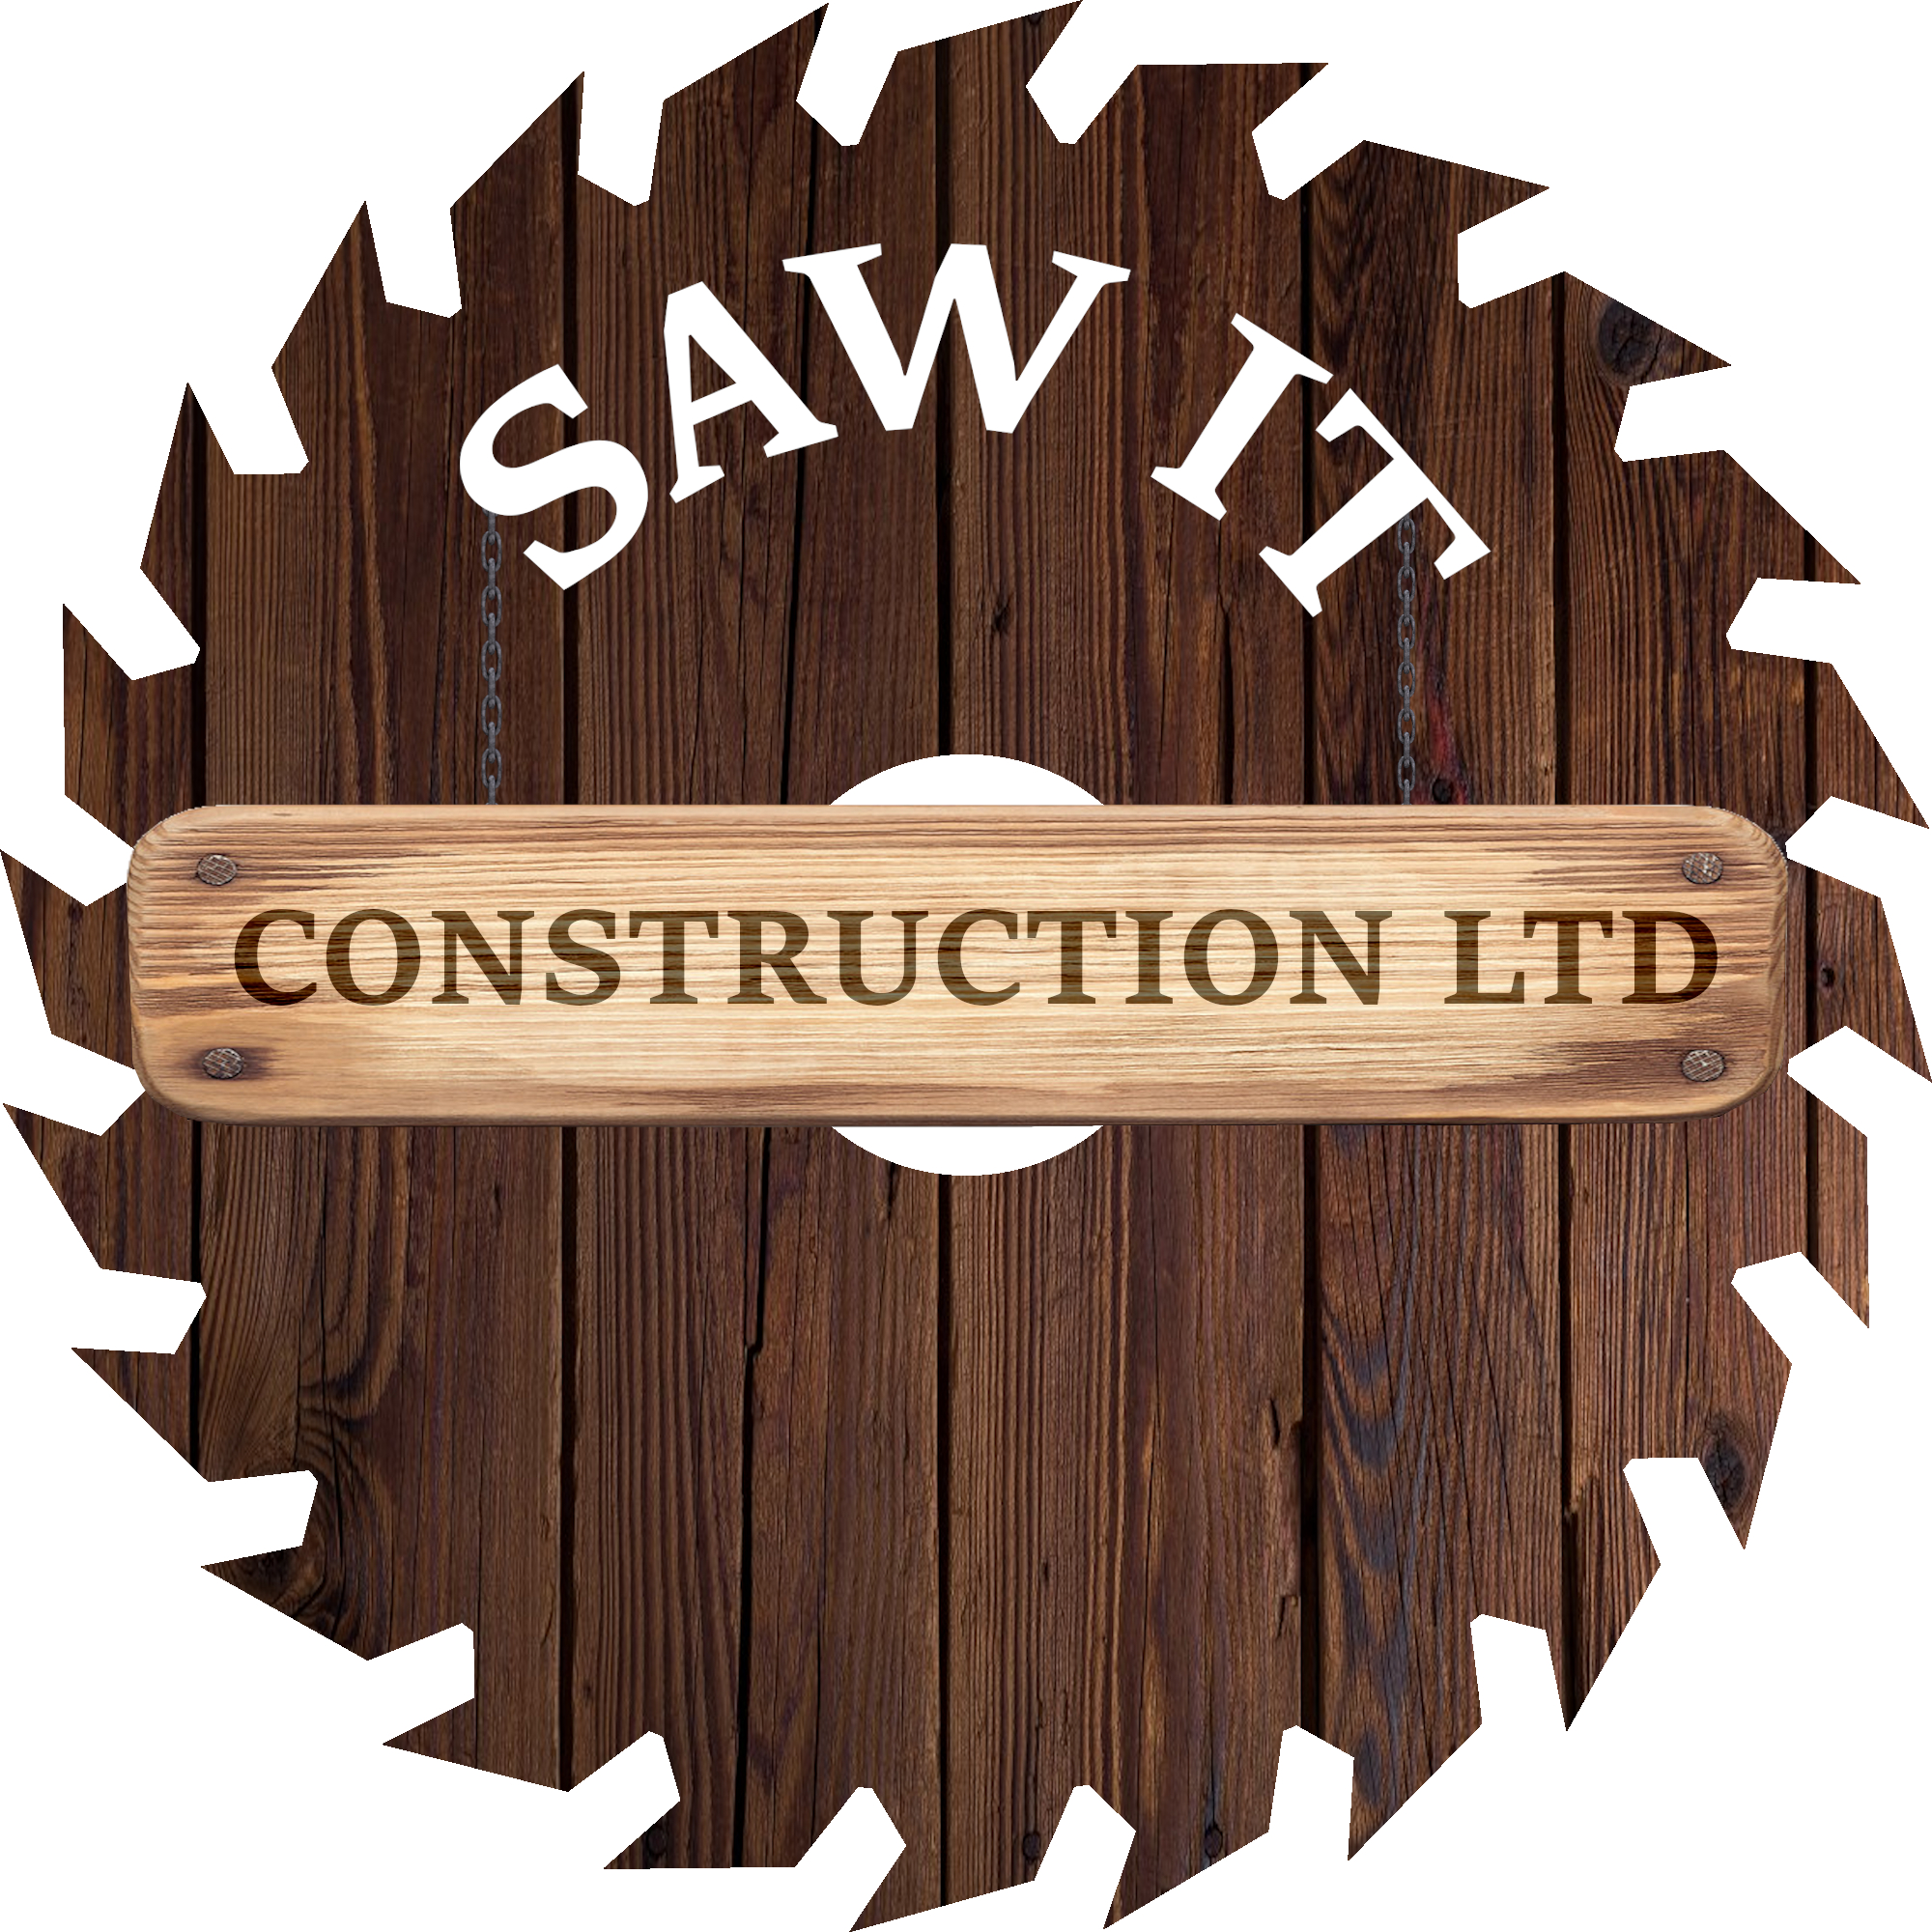 Sawit Construction